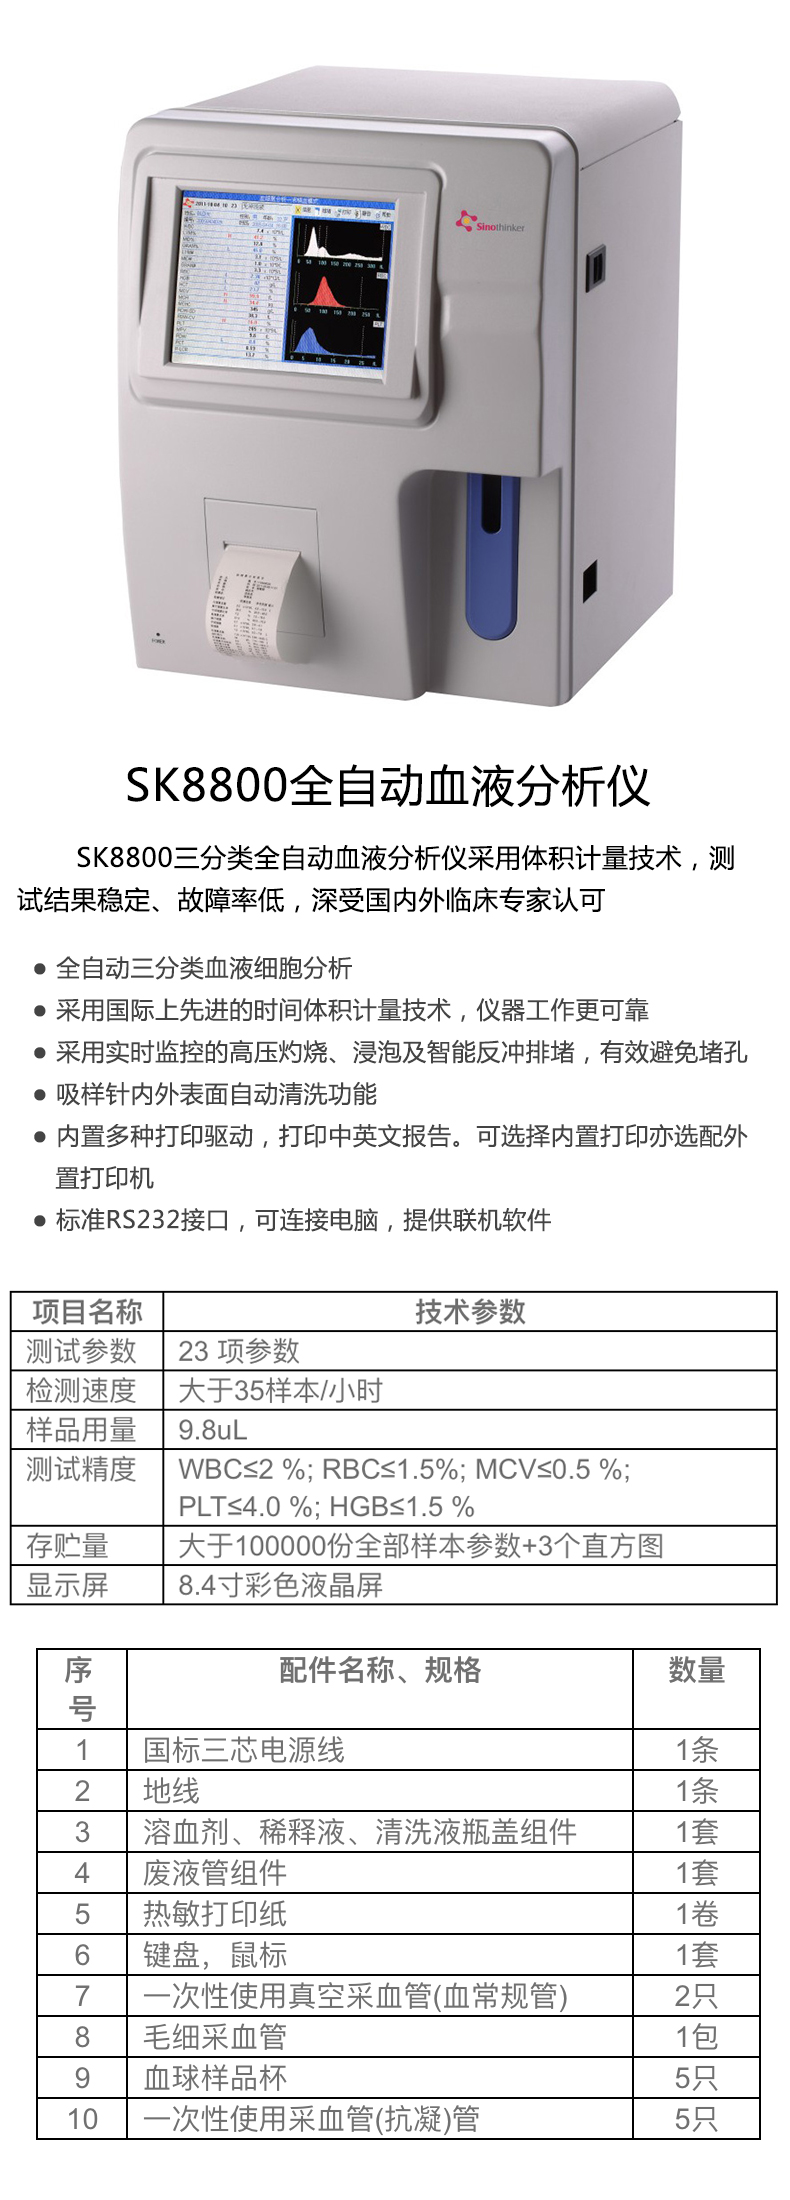 盛信康全自动血液分析仪SK8800 产品特点